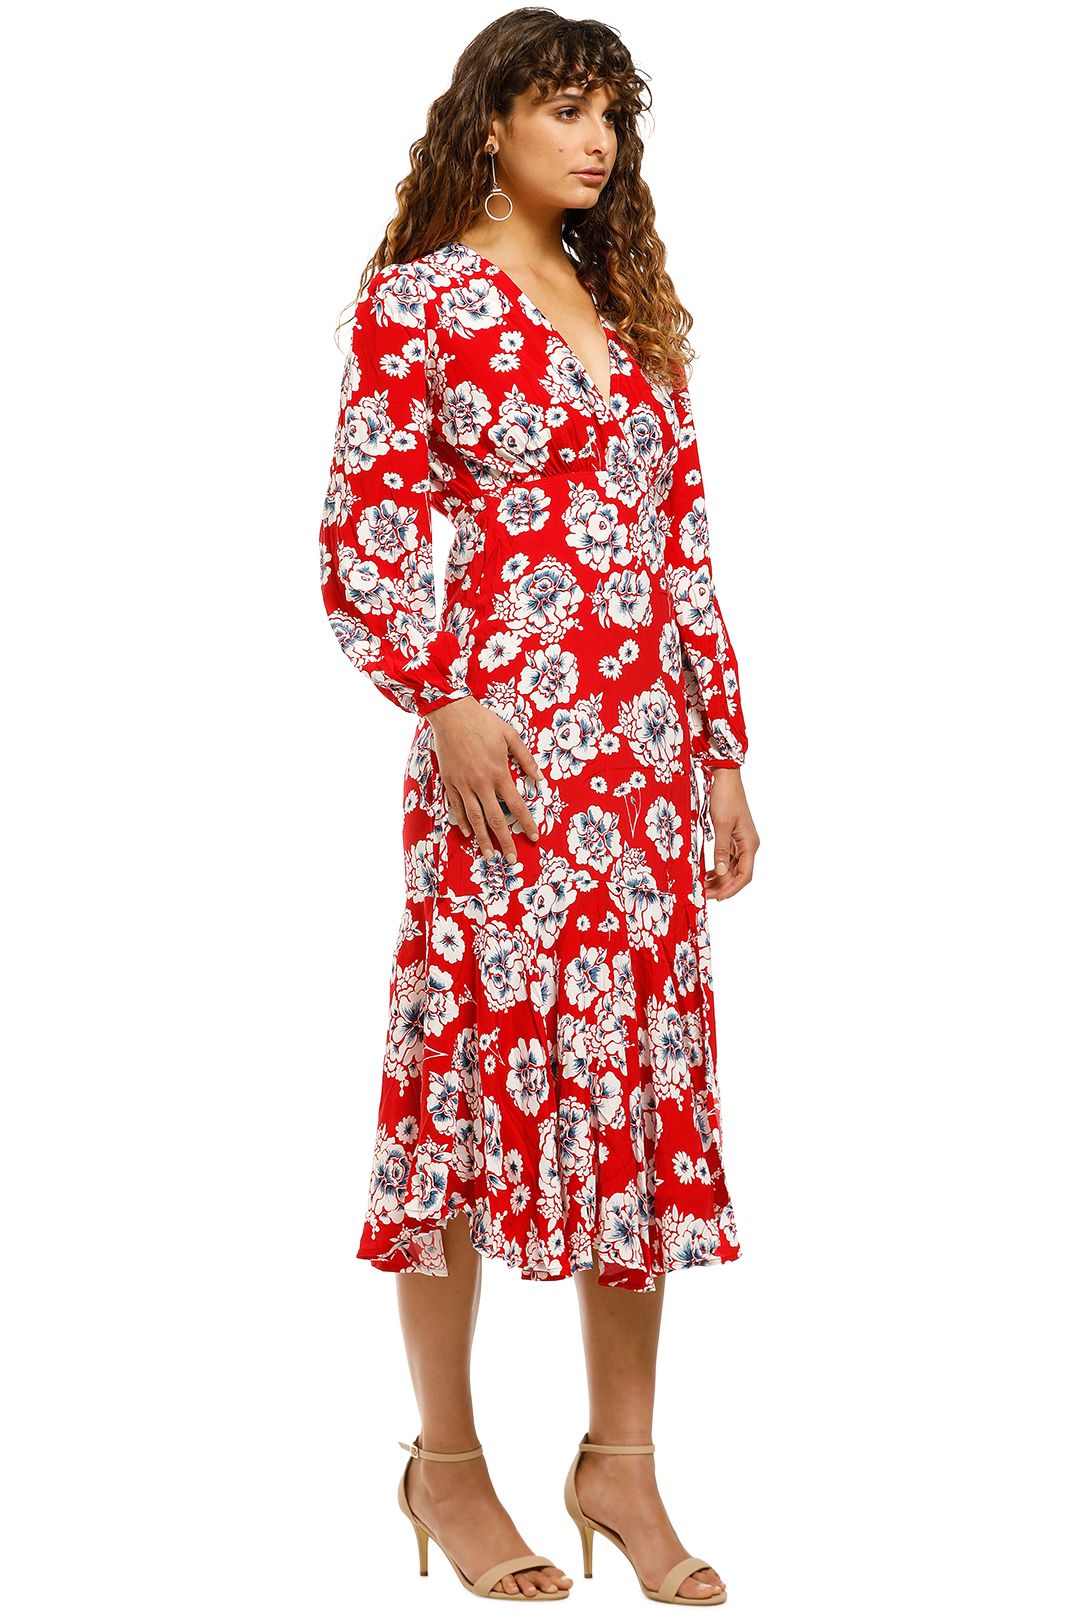 Peony Rice Style: JOAN Maxi Slip Dress